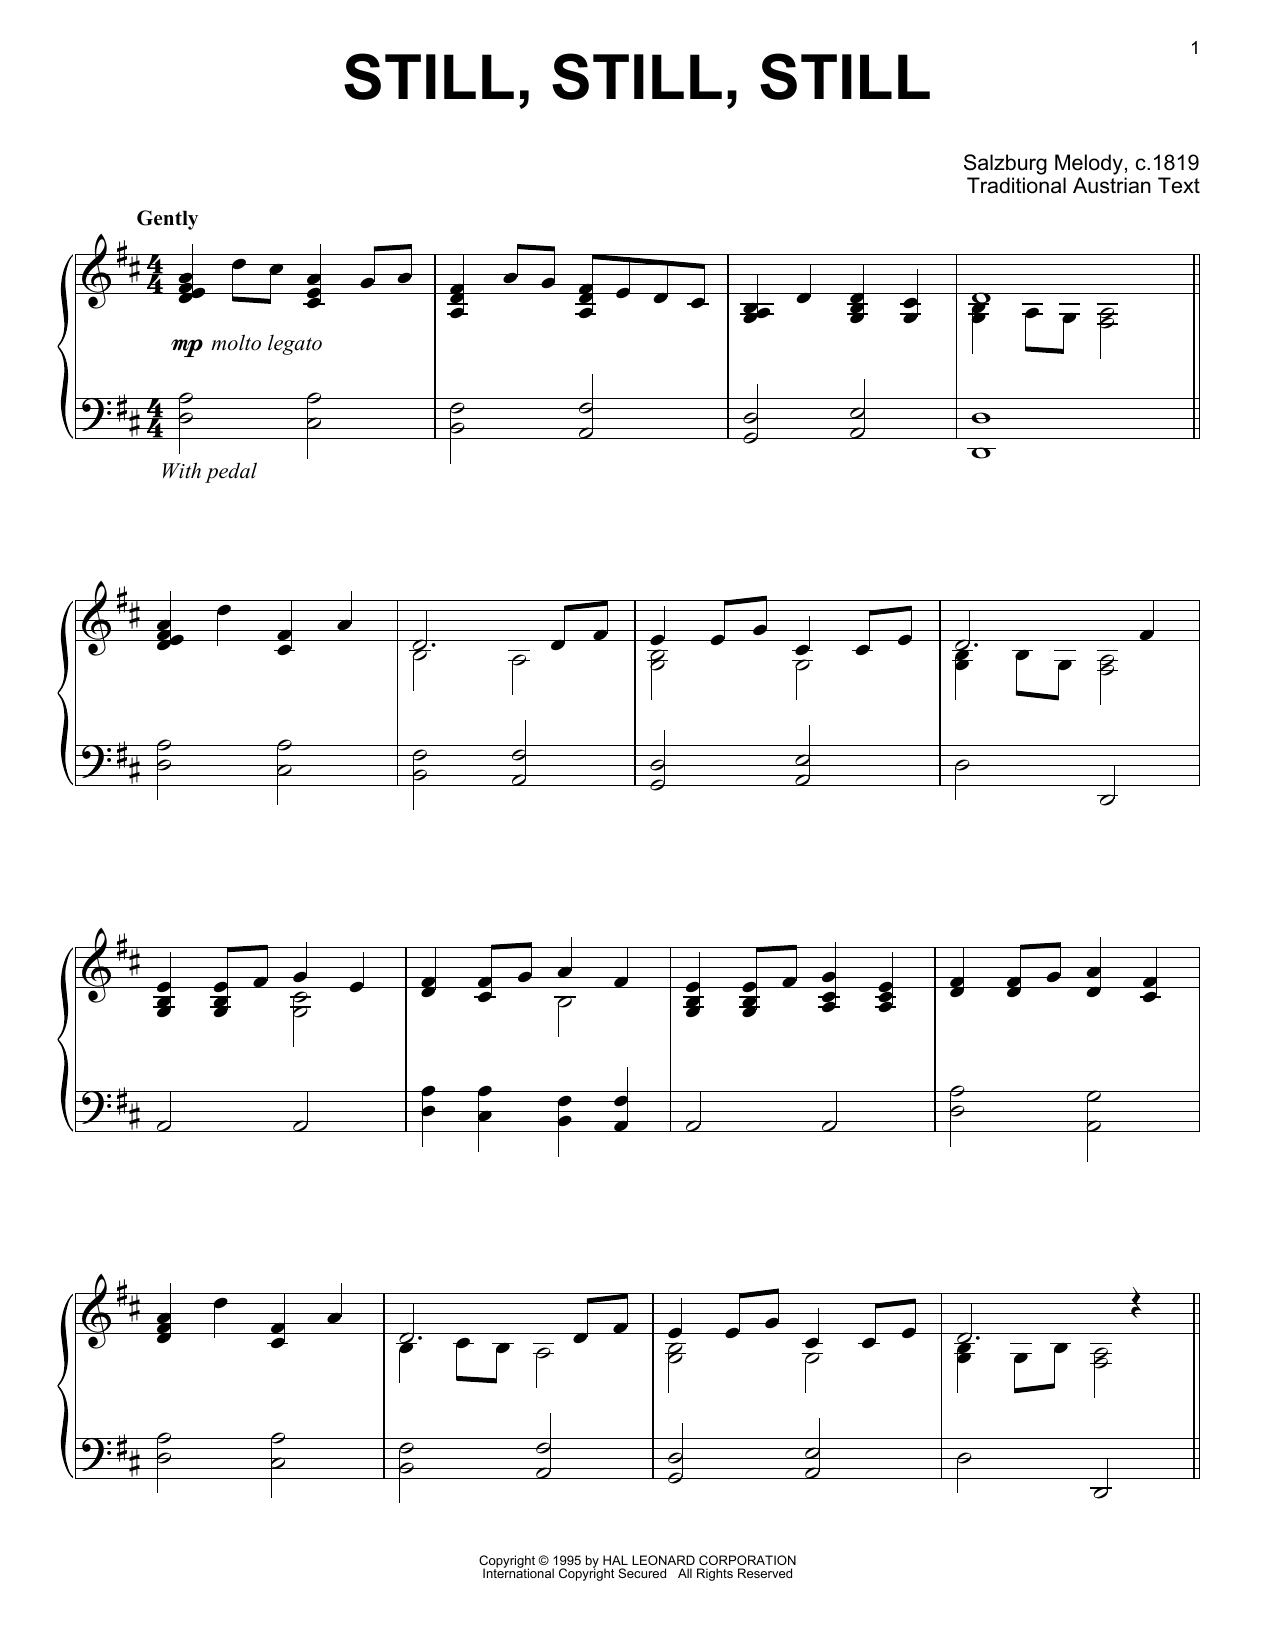 Traditional Austrian Text Still, Still, Still Sheet Music Notes & Chords for Violin Duet - Download or Print PDF